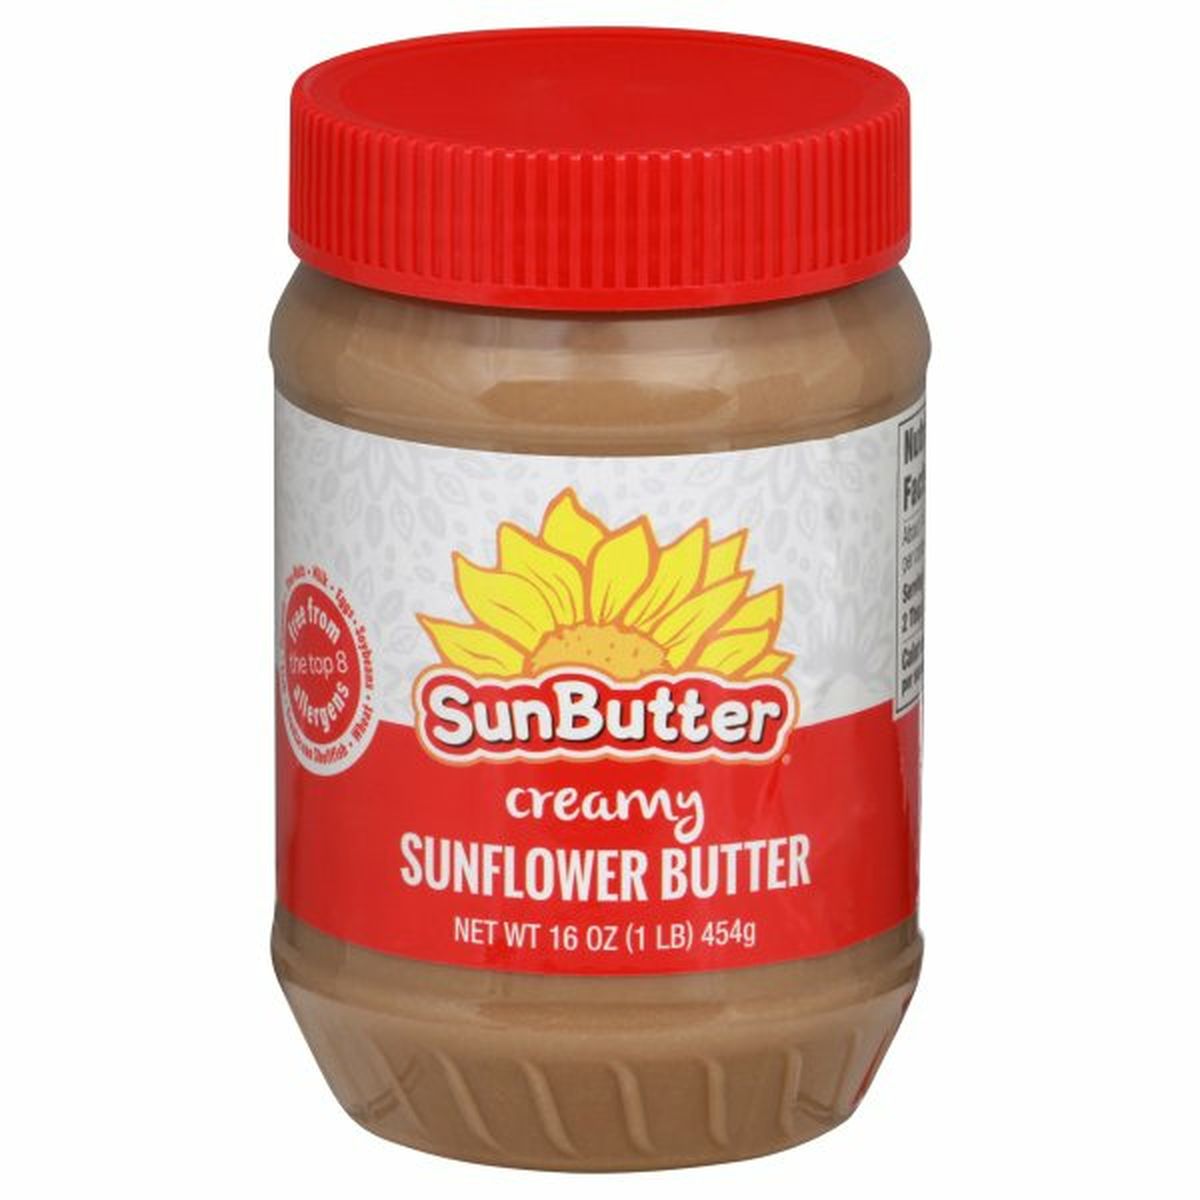 Calories in Sunbutter Sunflower Butter, Creamy